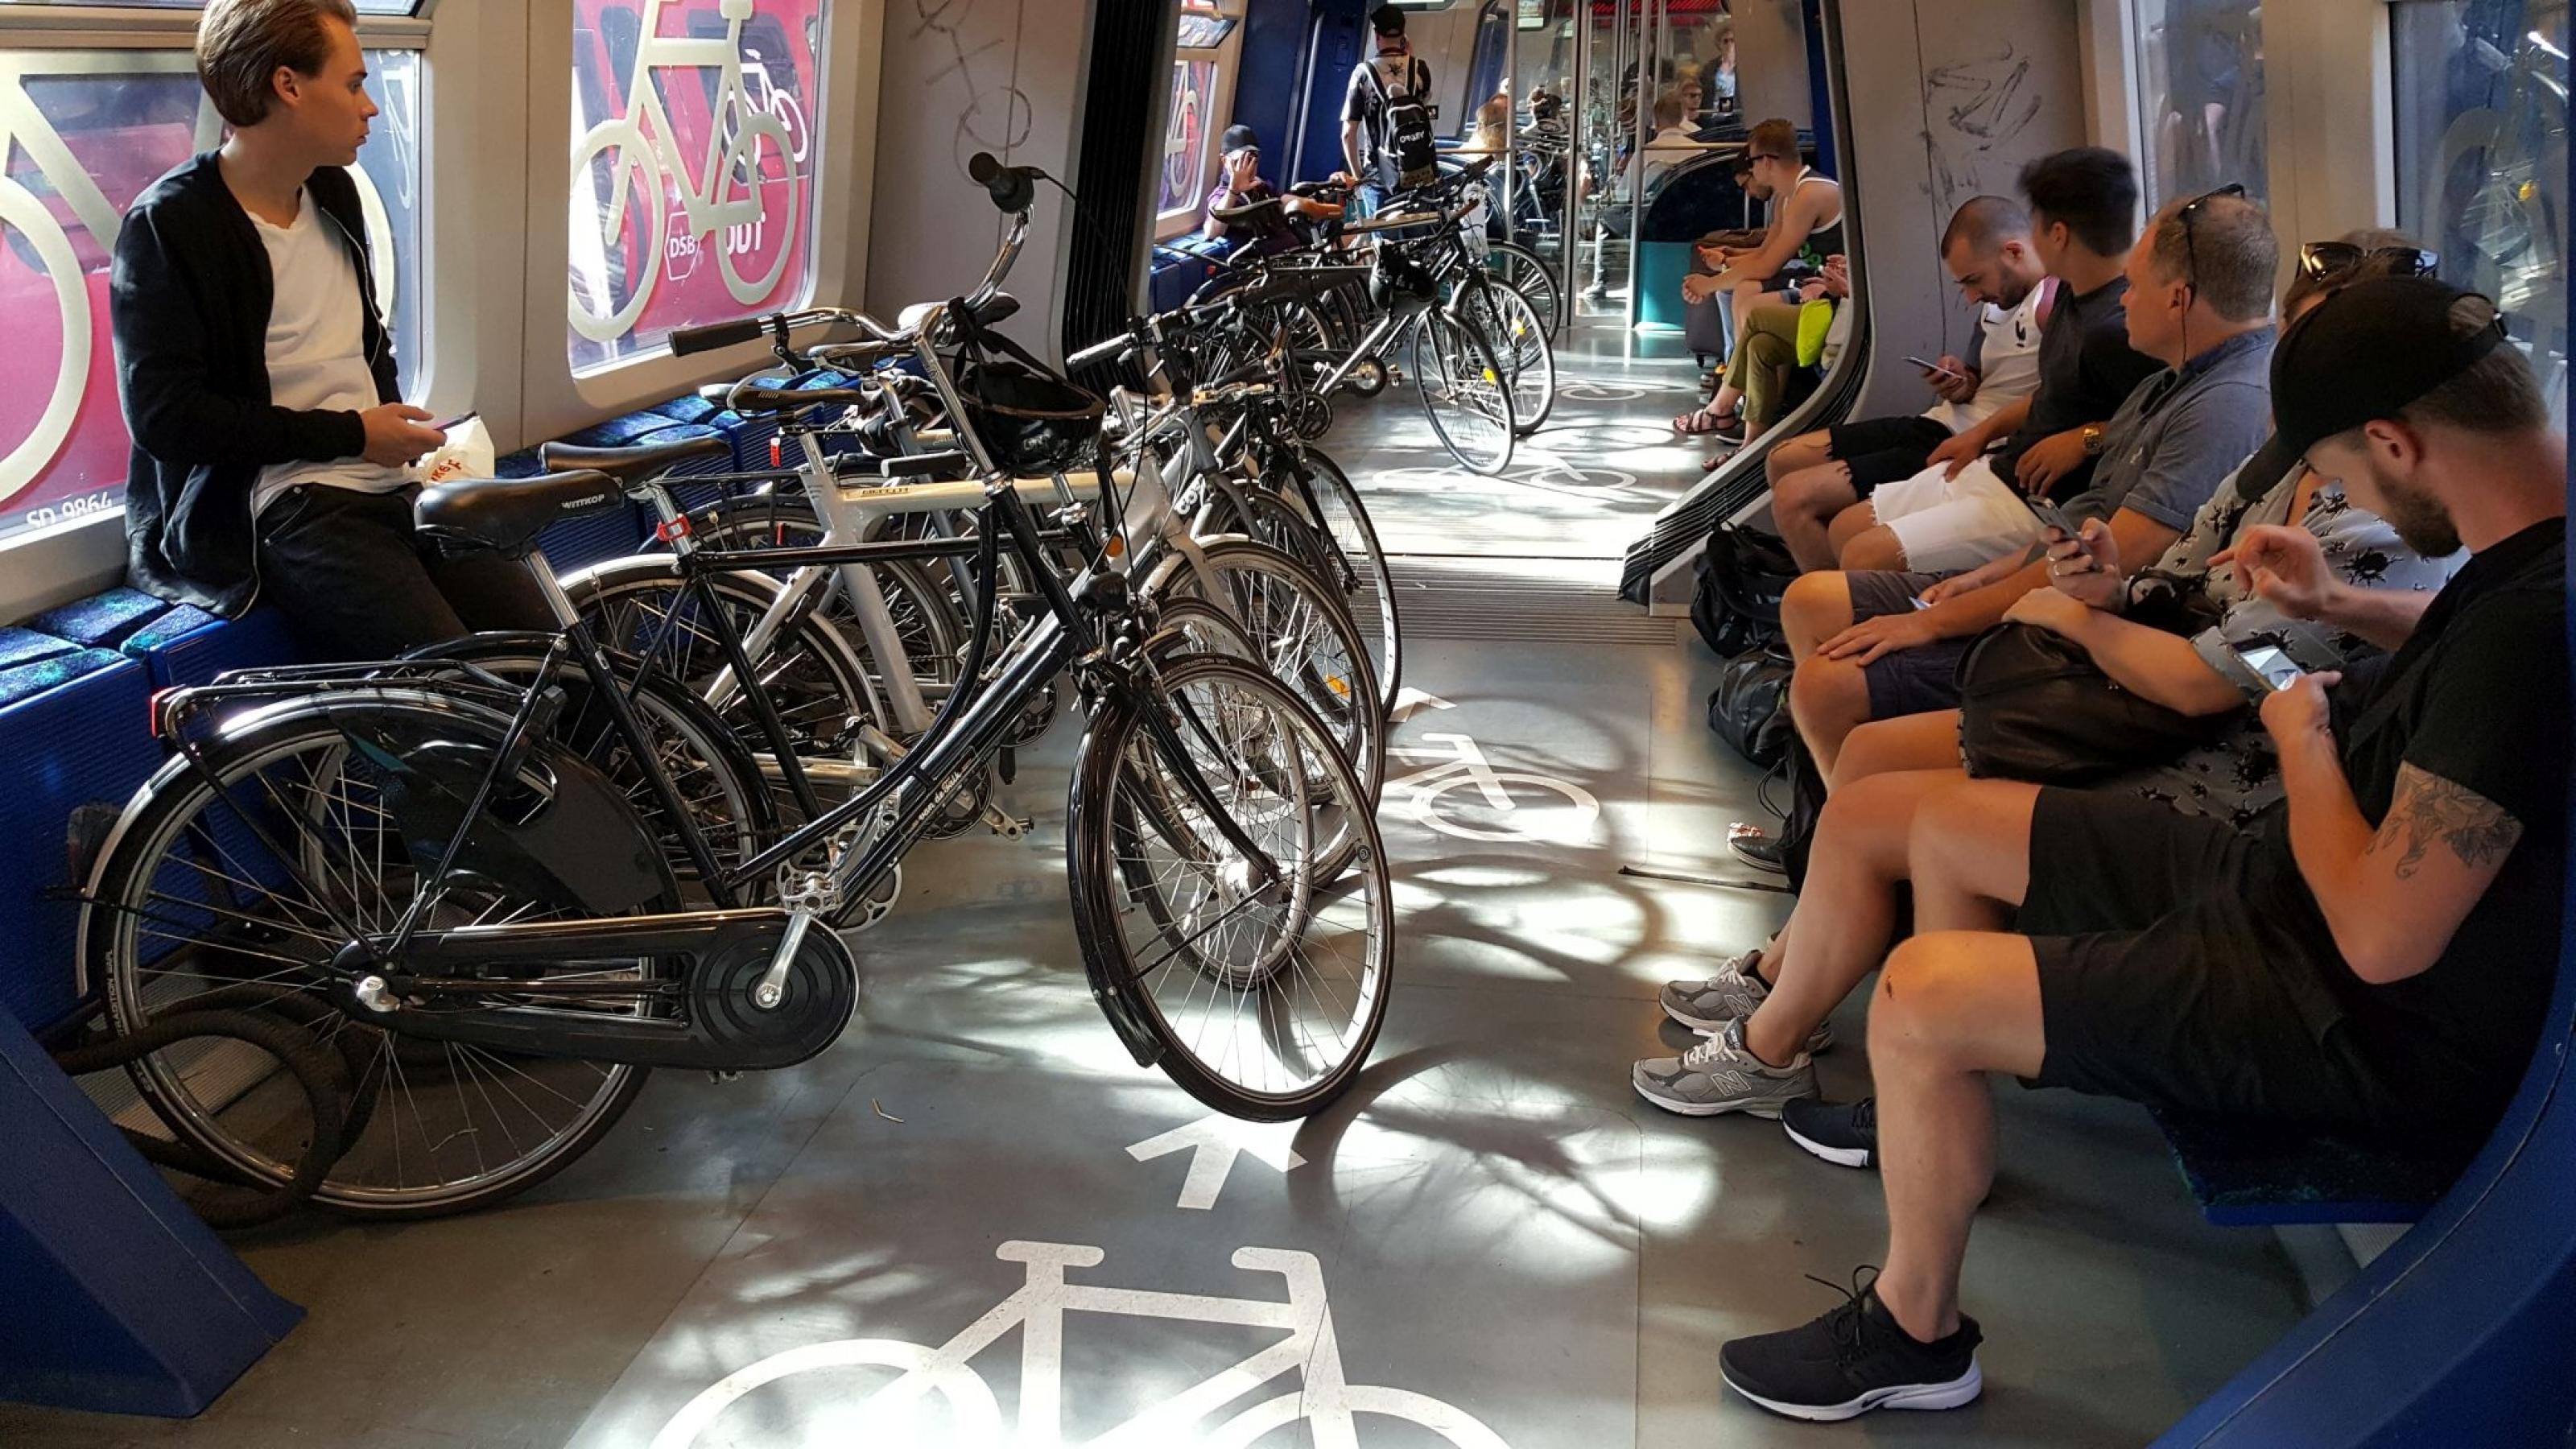 Zahlreiche Fahrräder in einem Waggon der Dänischen Bahn.